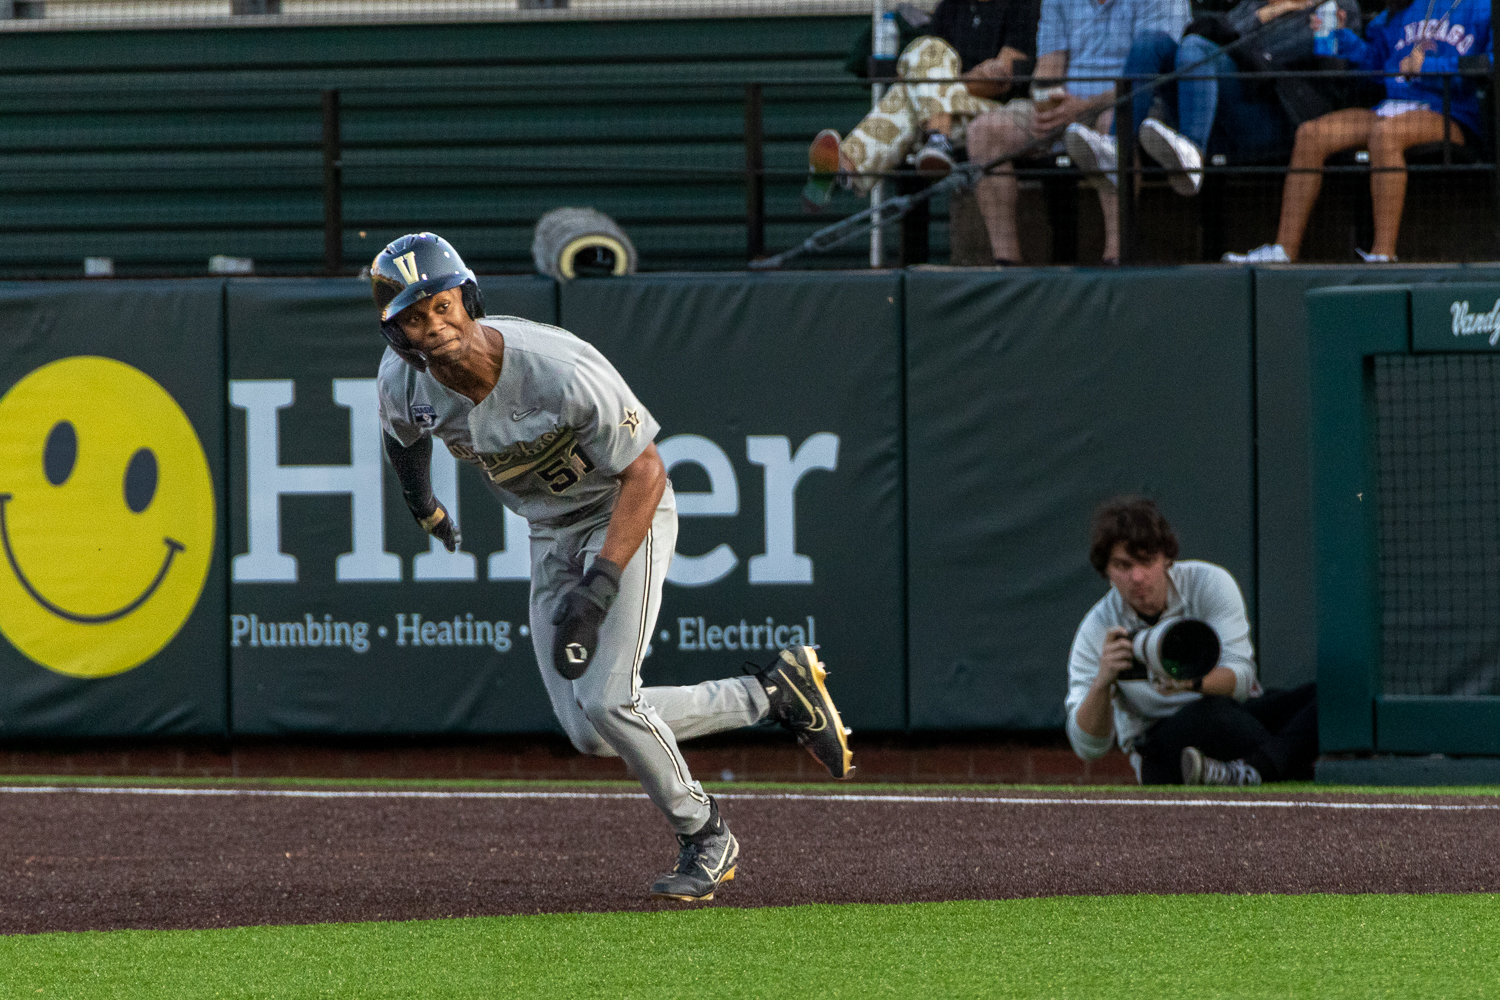 Vanderbilt player Matthew Polk competes during an NCAA baseball